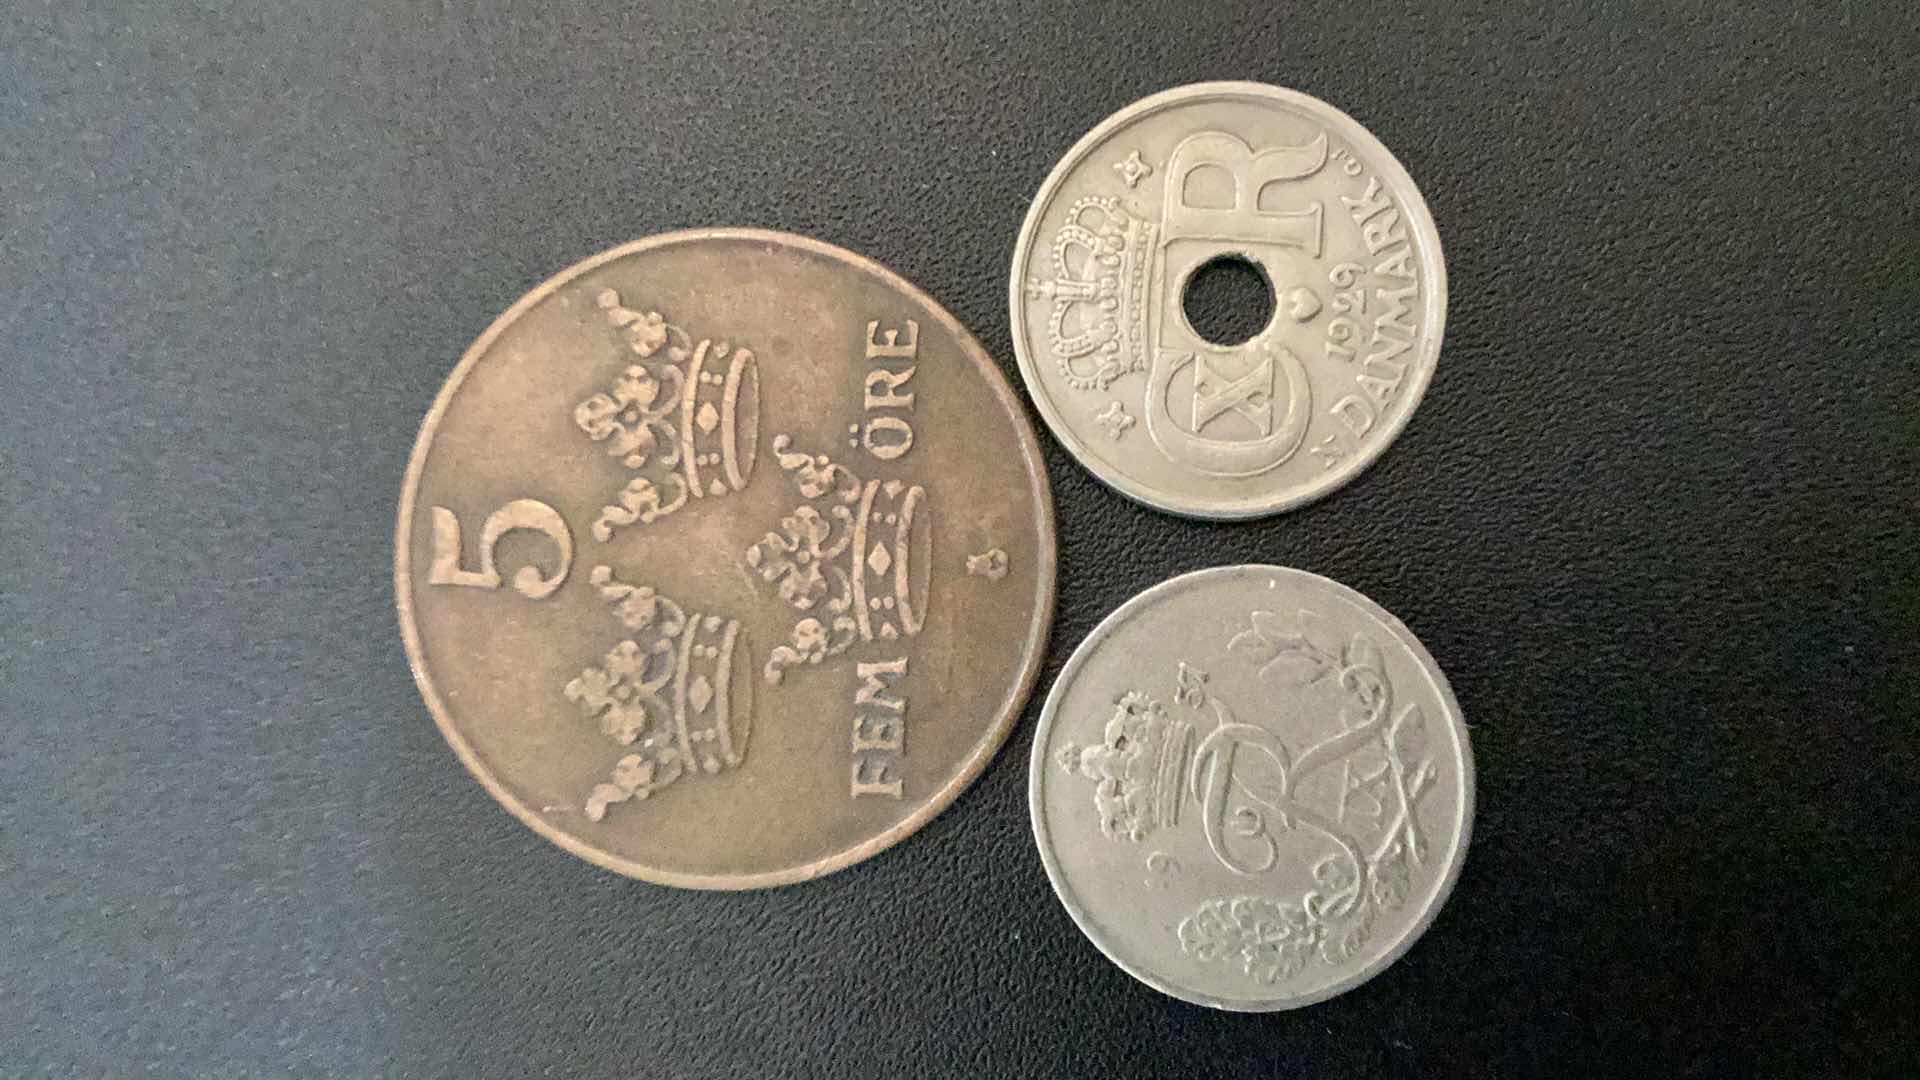 Photo 1 of 3 COLLECTIBLE COINS - 2 DENMARK  (5 ORE AND 10 ORE 1929), 1 DENMARK  10 ORE 1957